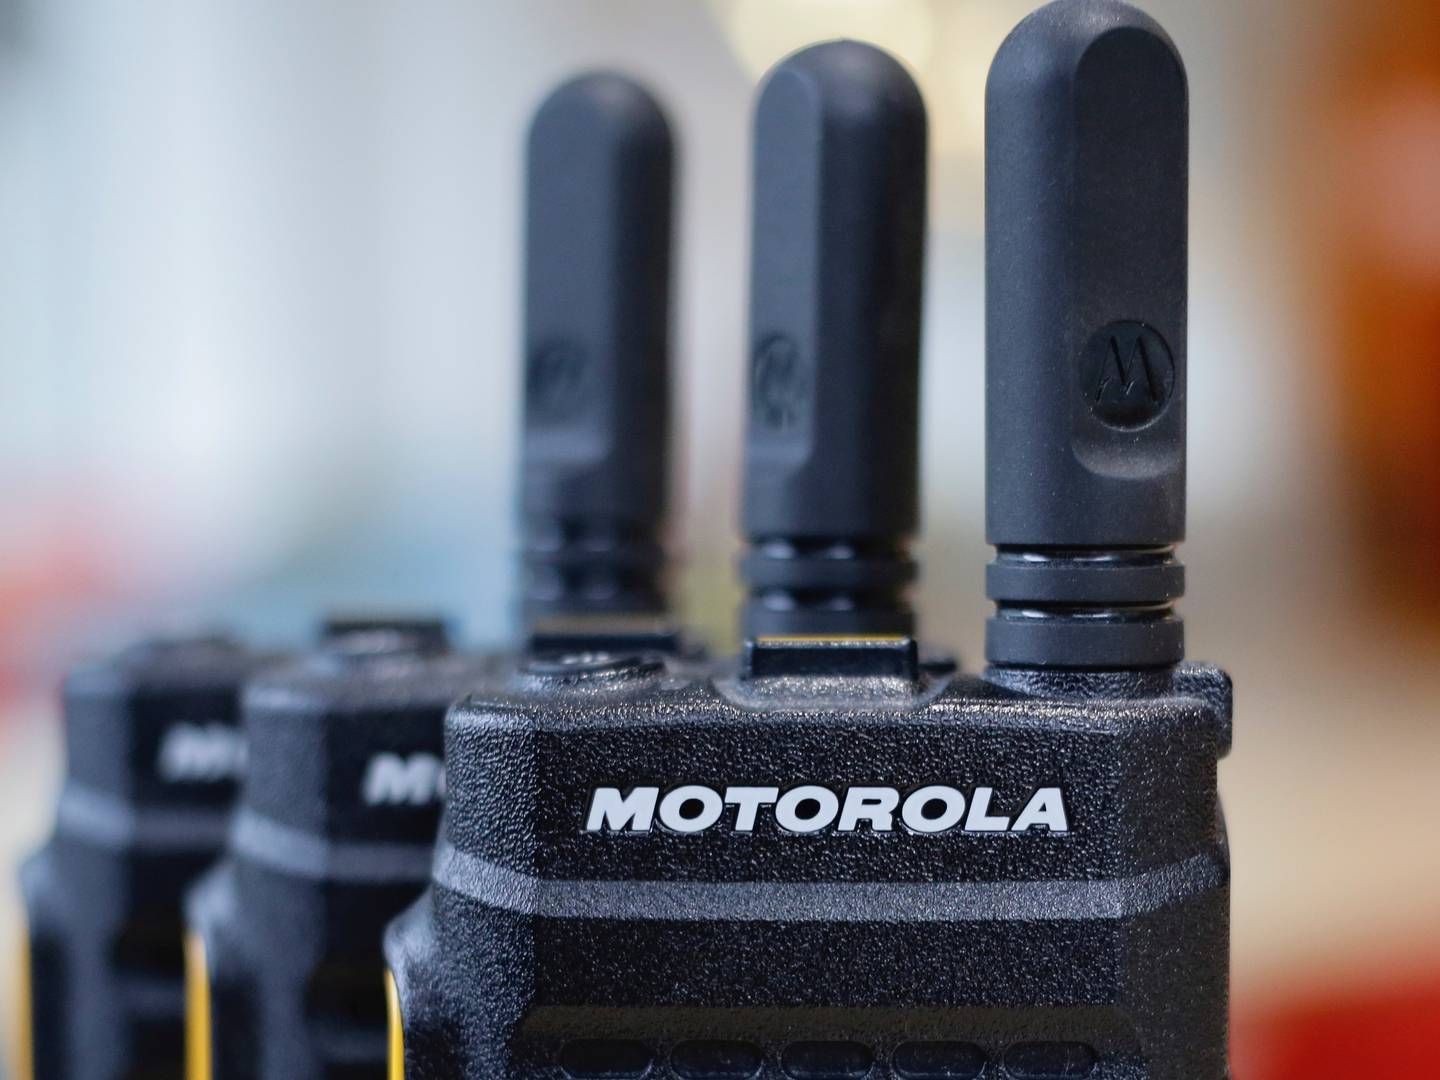 I Danmark levere Motorola bl.a. sikre radionetværk til offentlige myndigheder. | Foto: Kevin Coombs/Reuters/Ritzau Scanpix